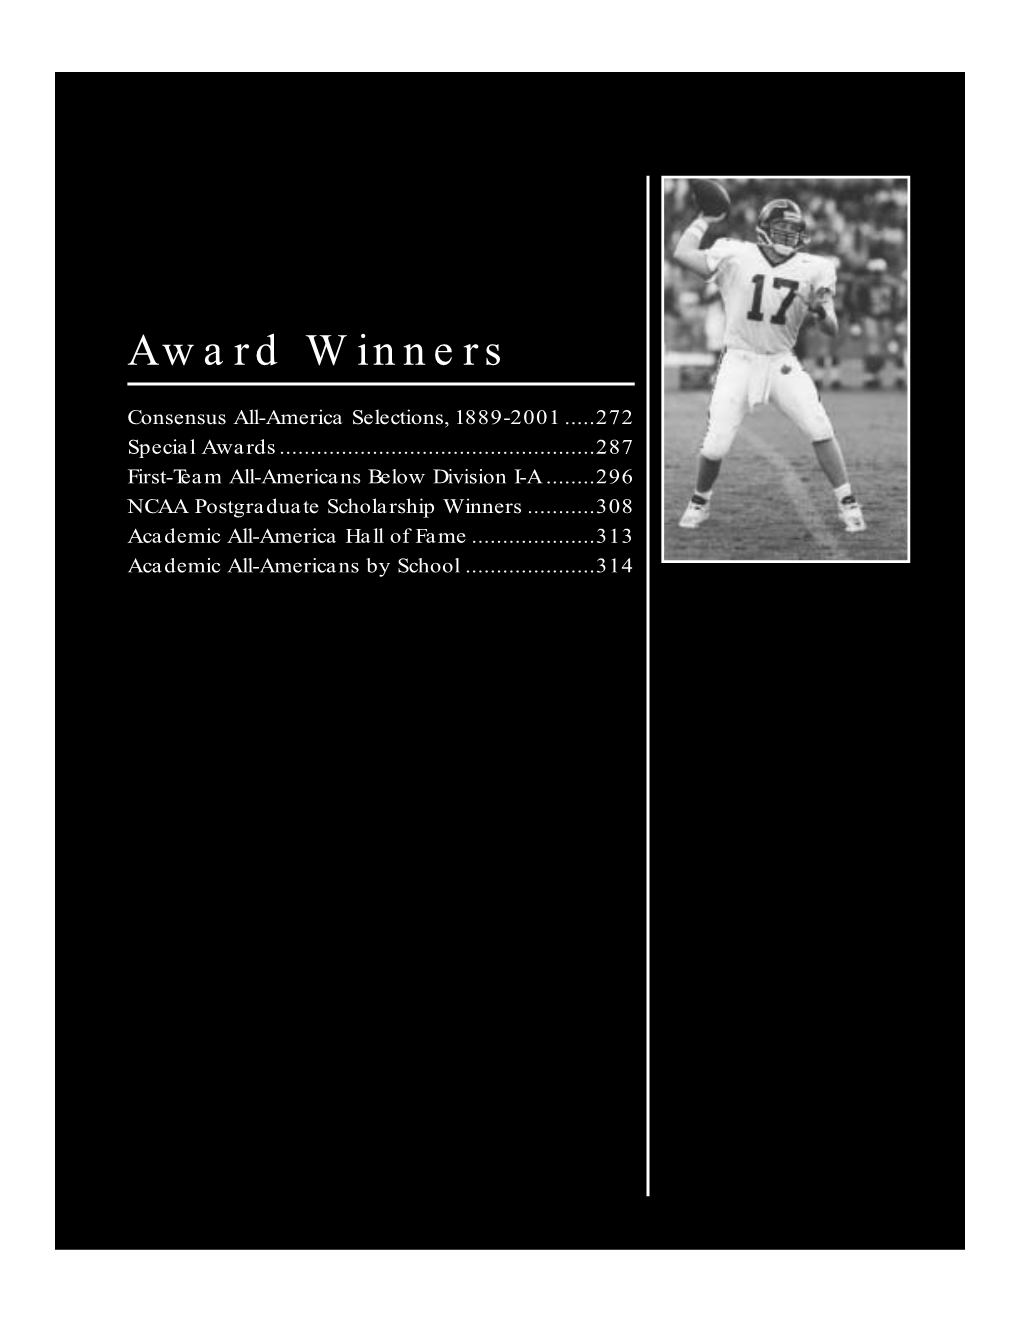 2002 NCAA Football Records Book